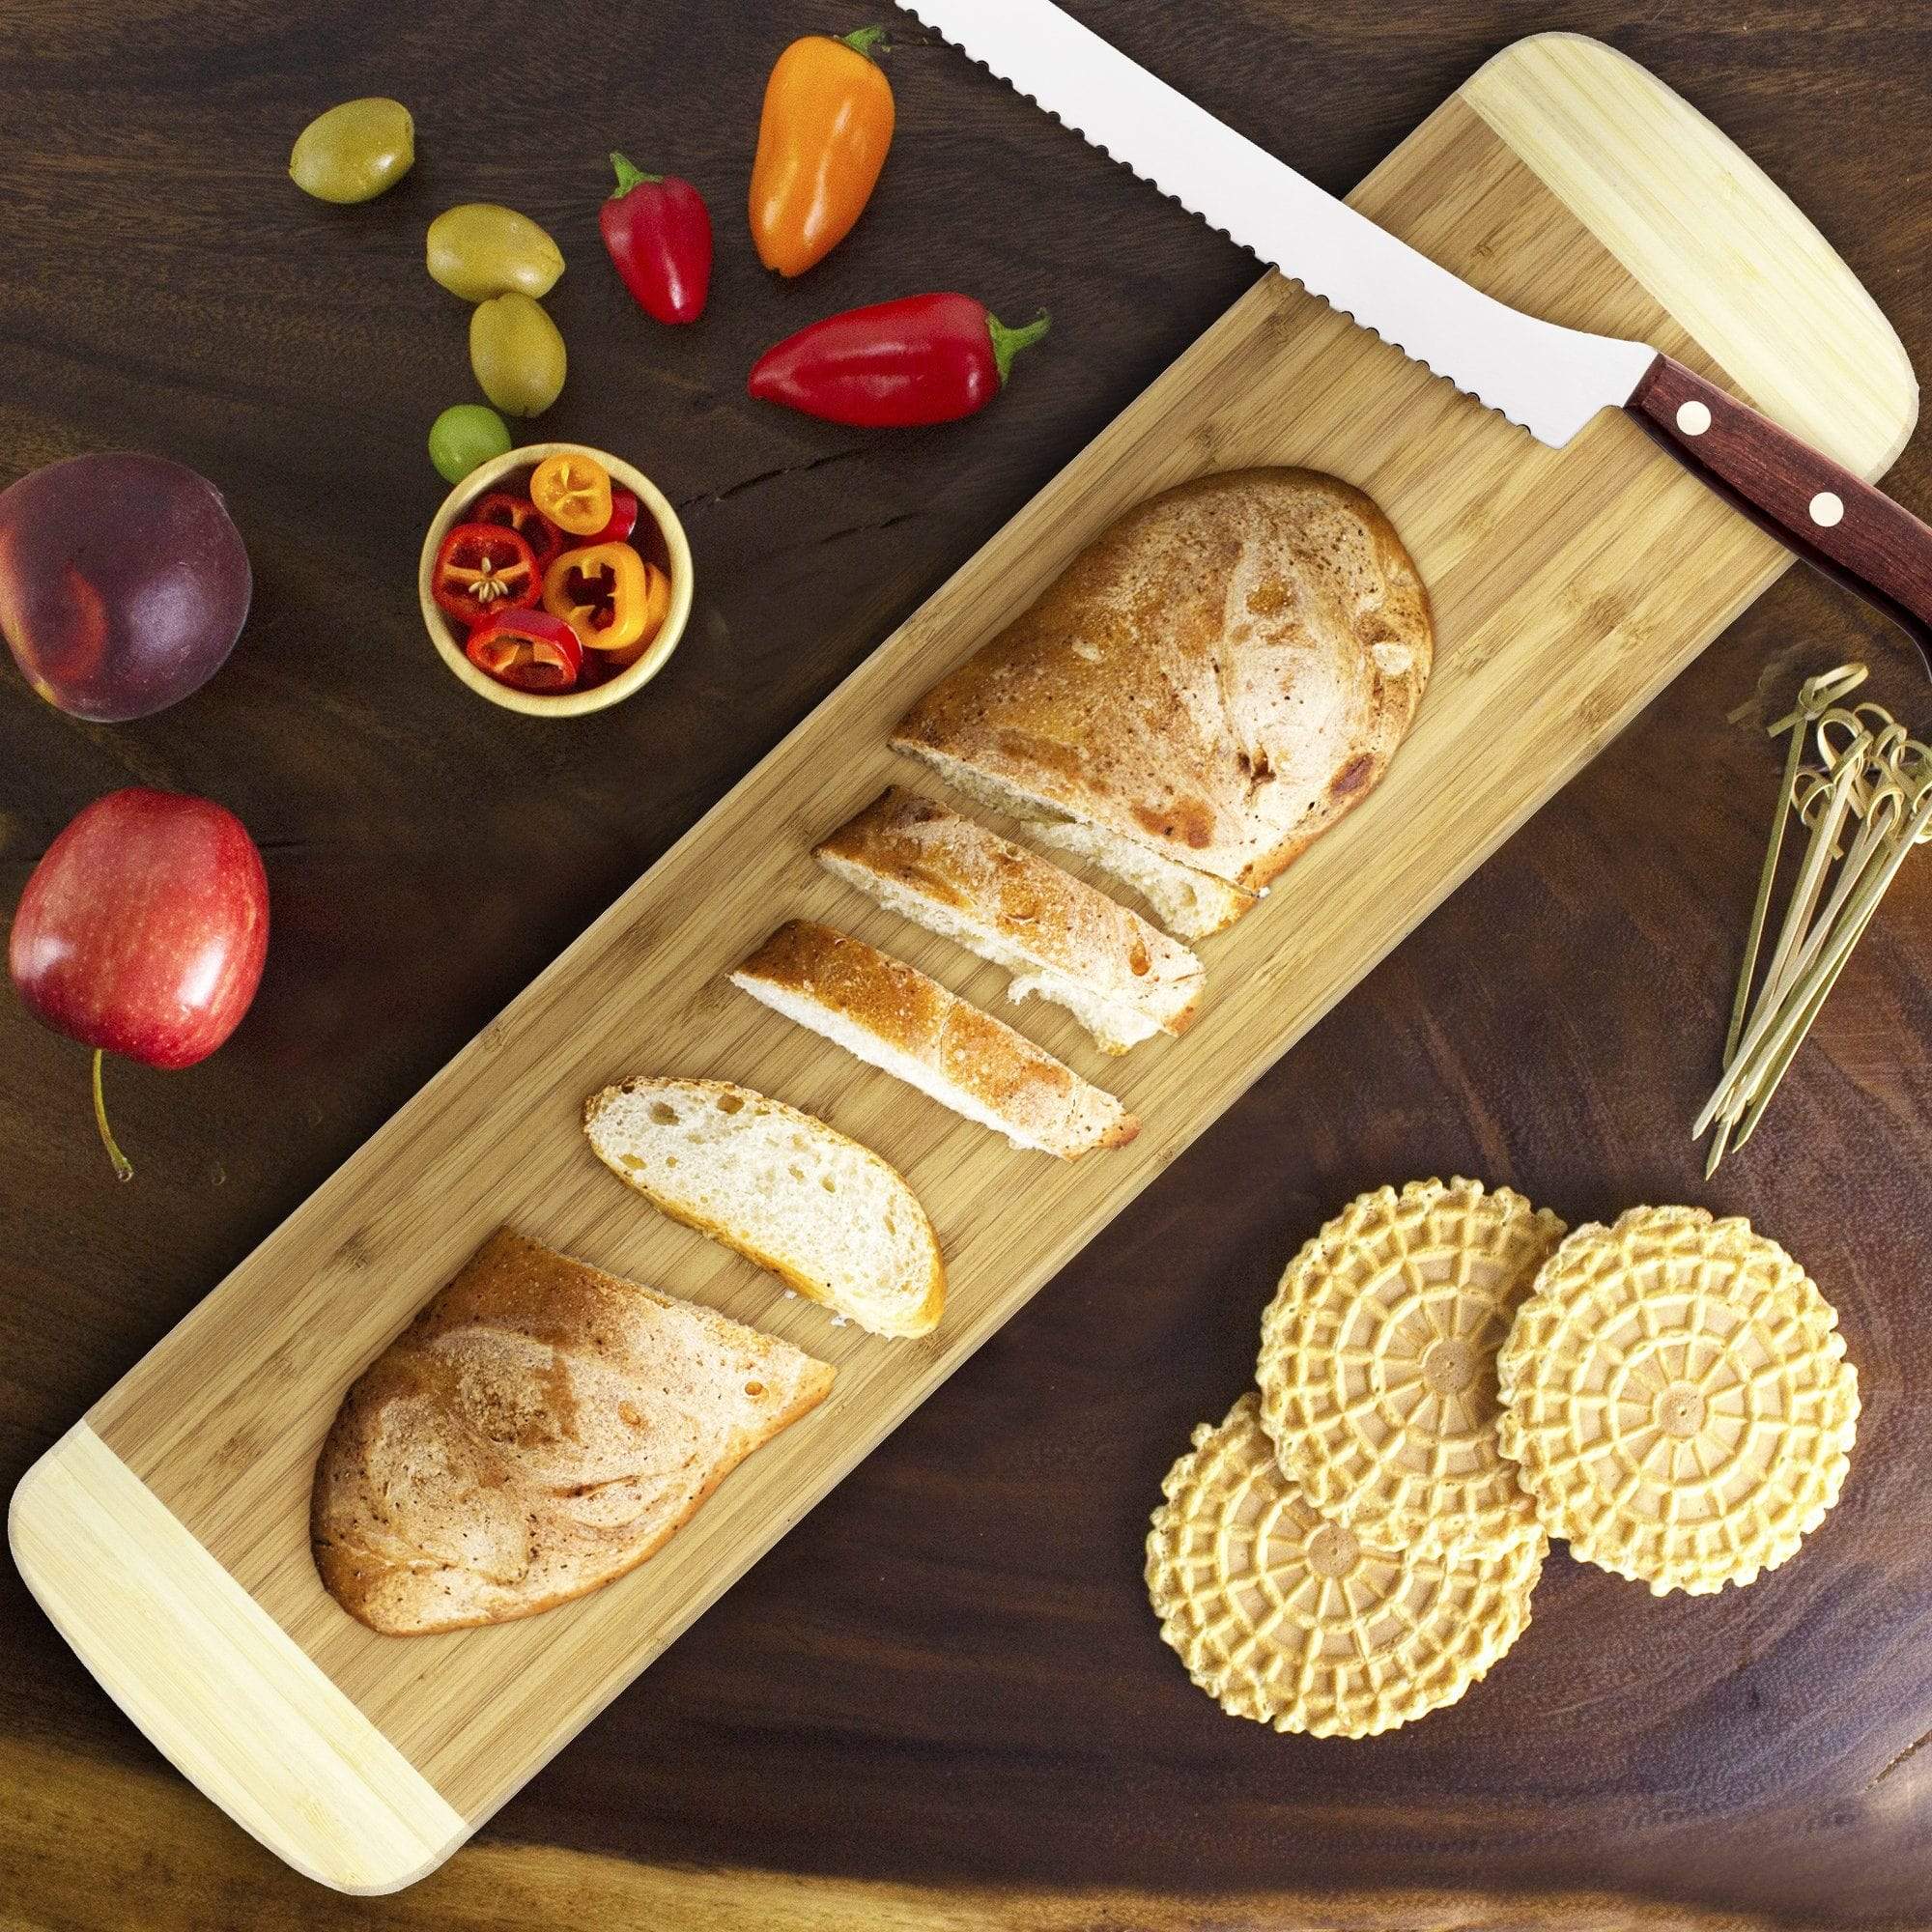 Wood Bread Board